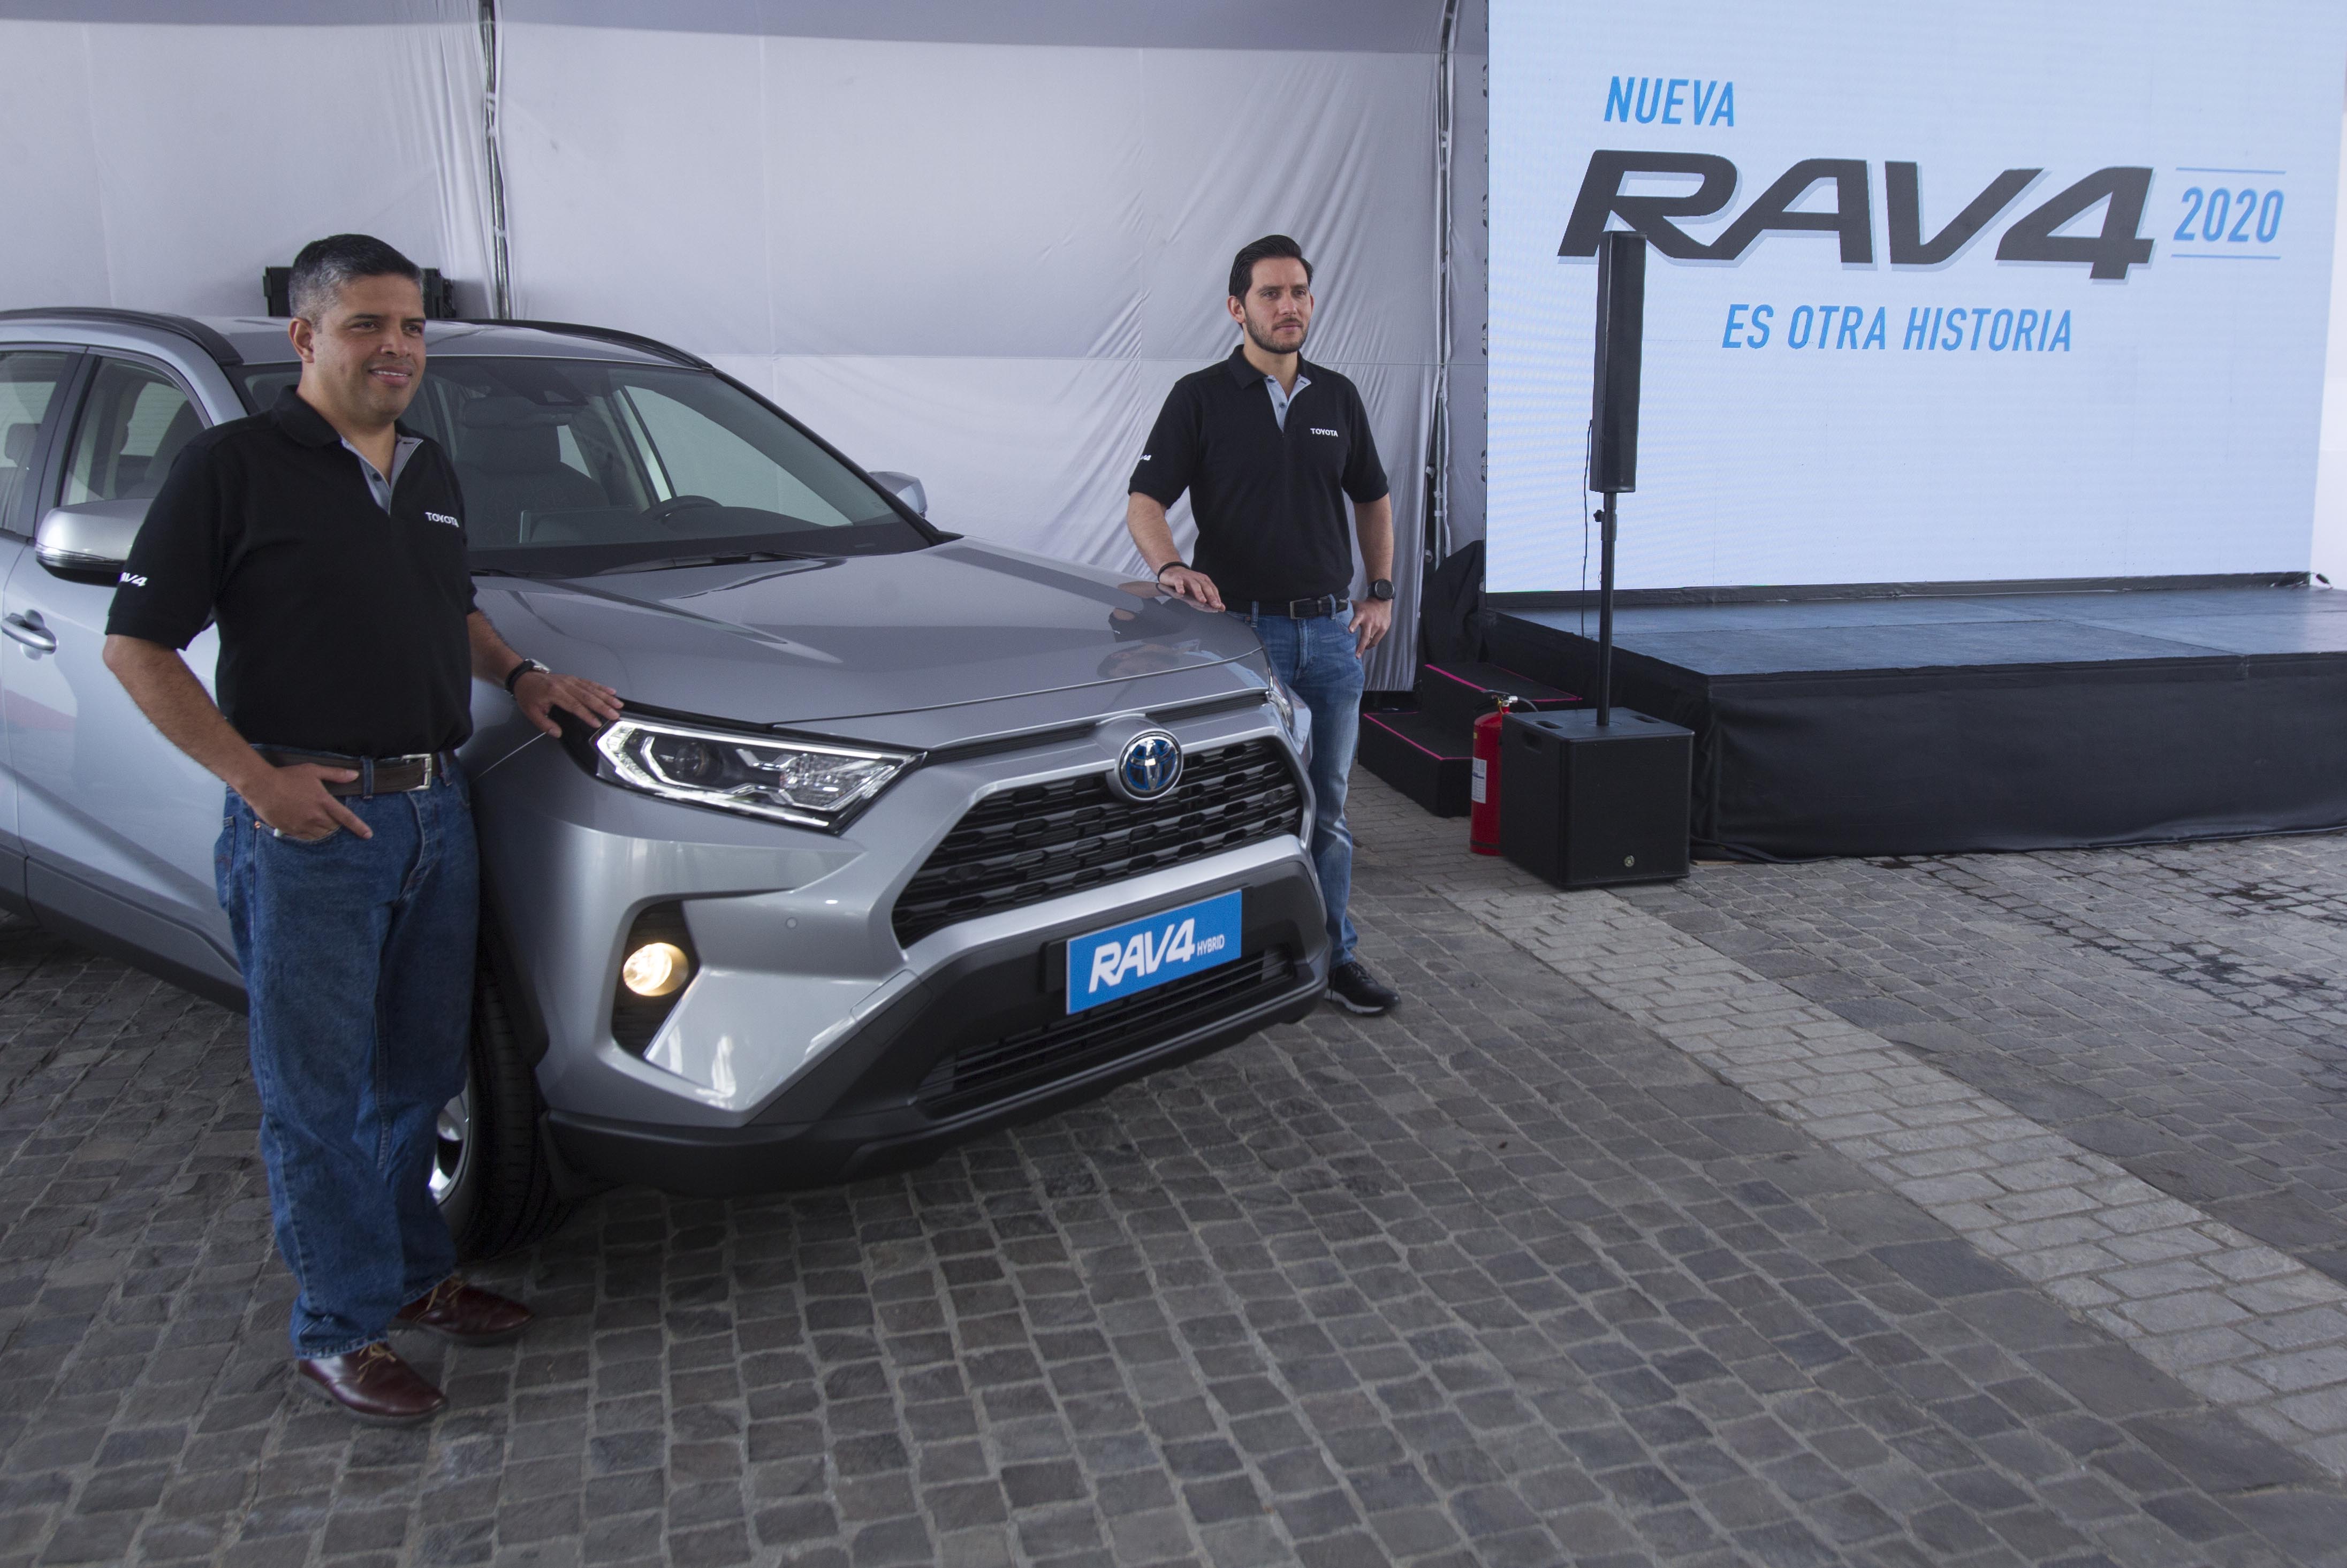 Personeros de Cofiño Stahl presentaron la nueva edición RAV4 en su modelo 2020.